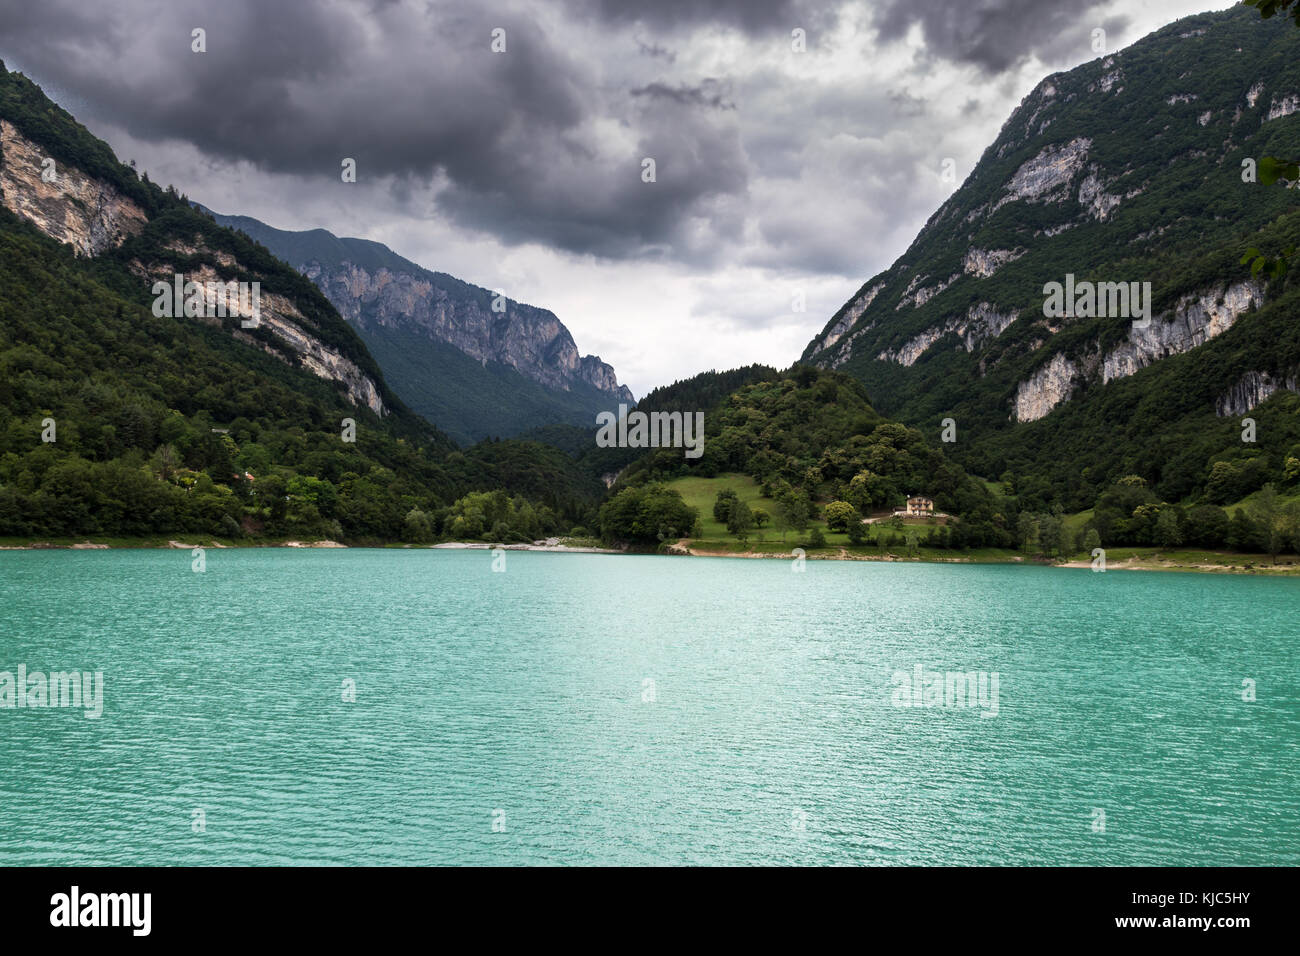 Lago di Tenno, North fo Garda lake, Italy Stock Photo